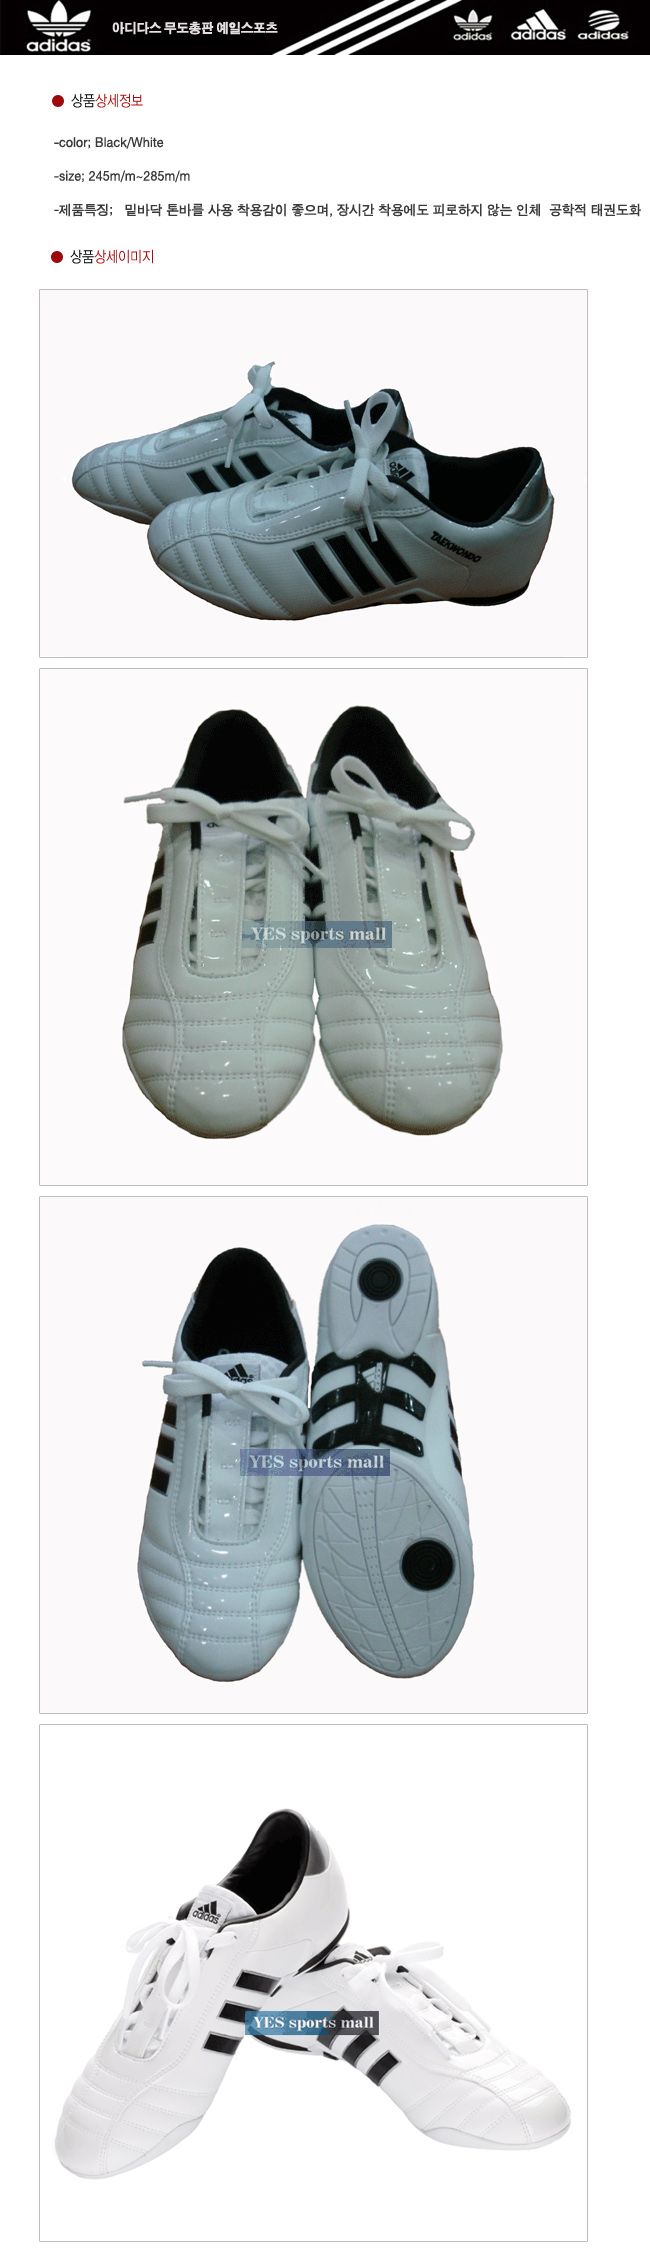 adidas taekwondo shoes ebay